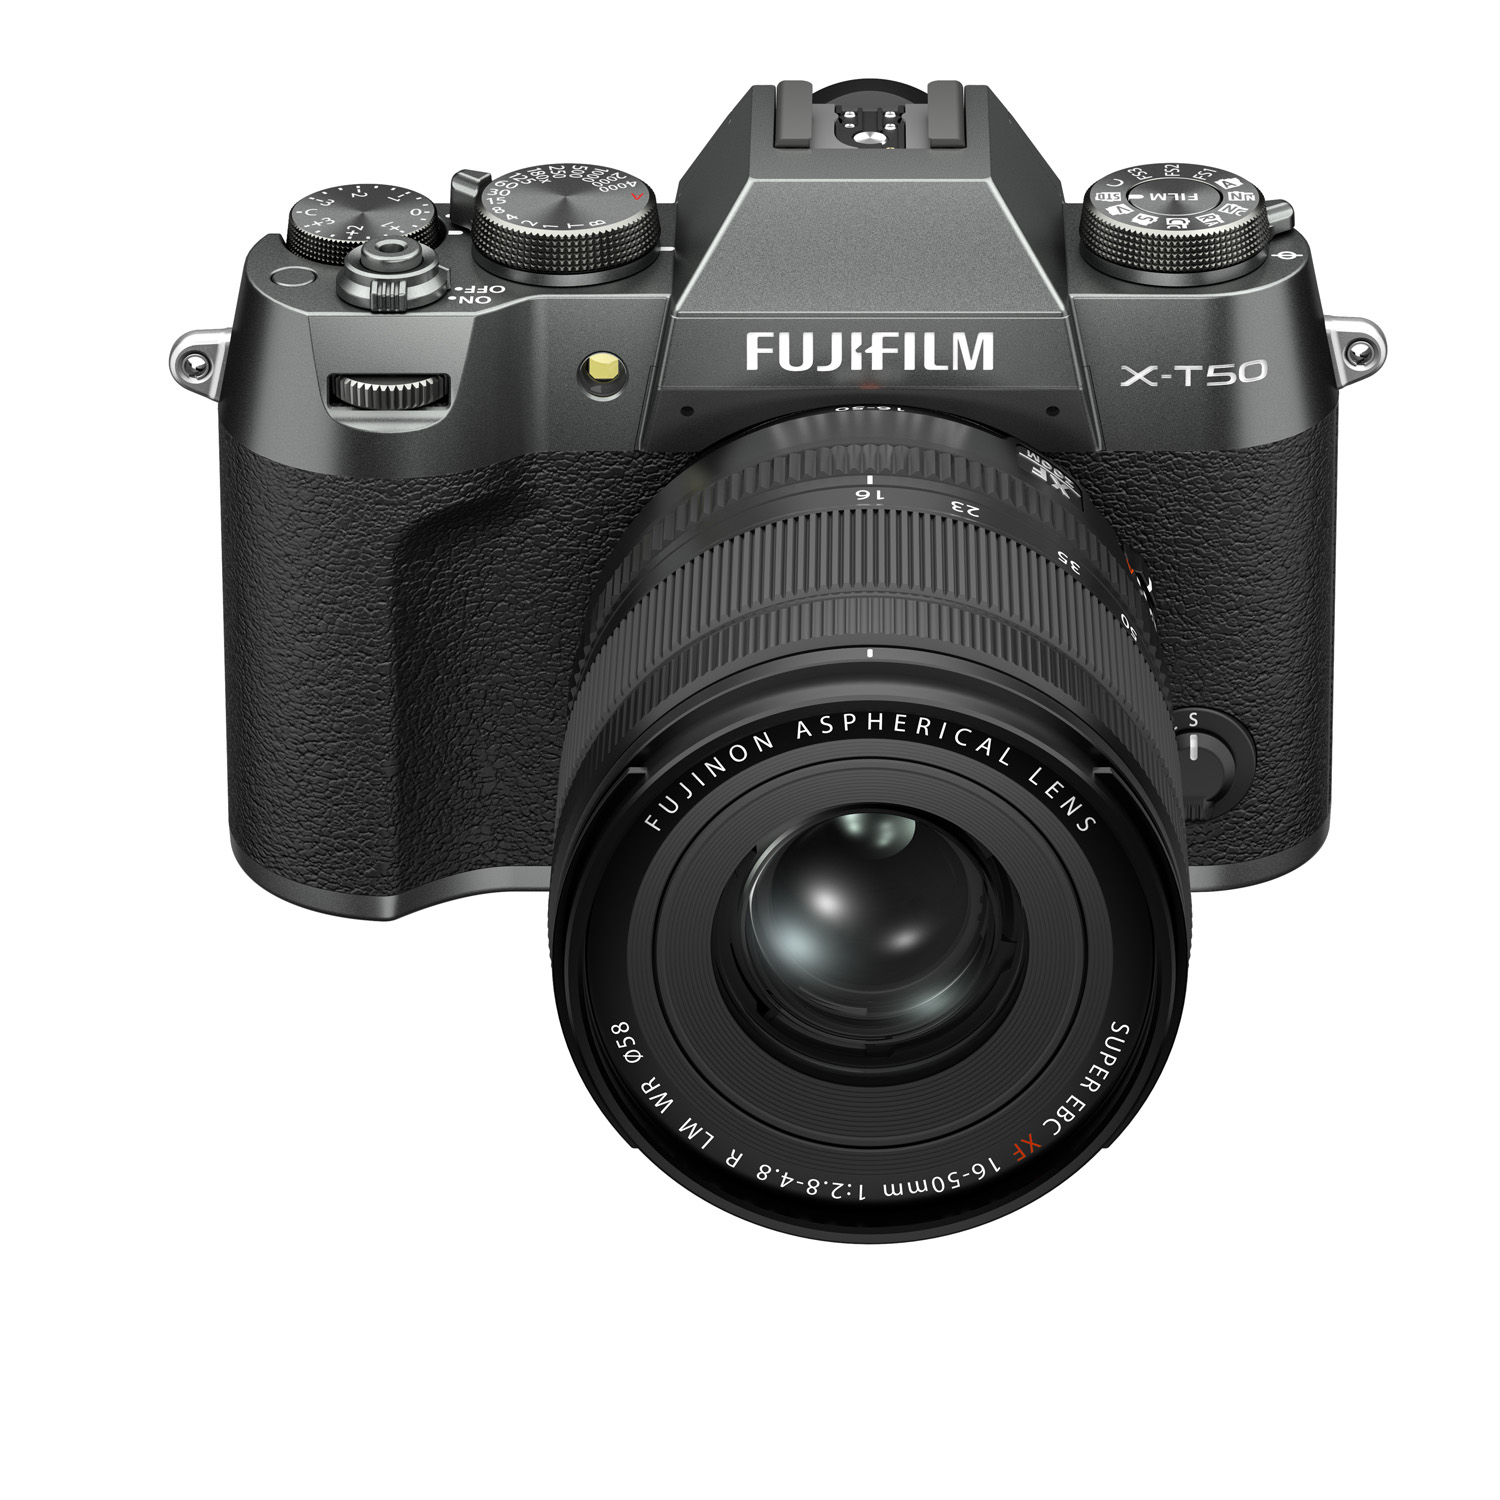 вид спередиСнимок камеры Fujifilm X-T50 на белом фоне, вид спереди